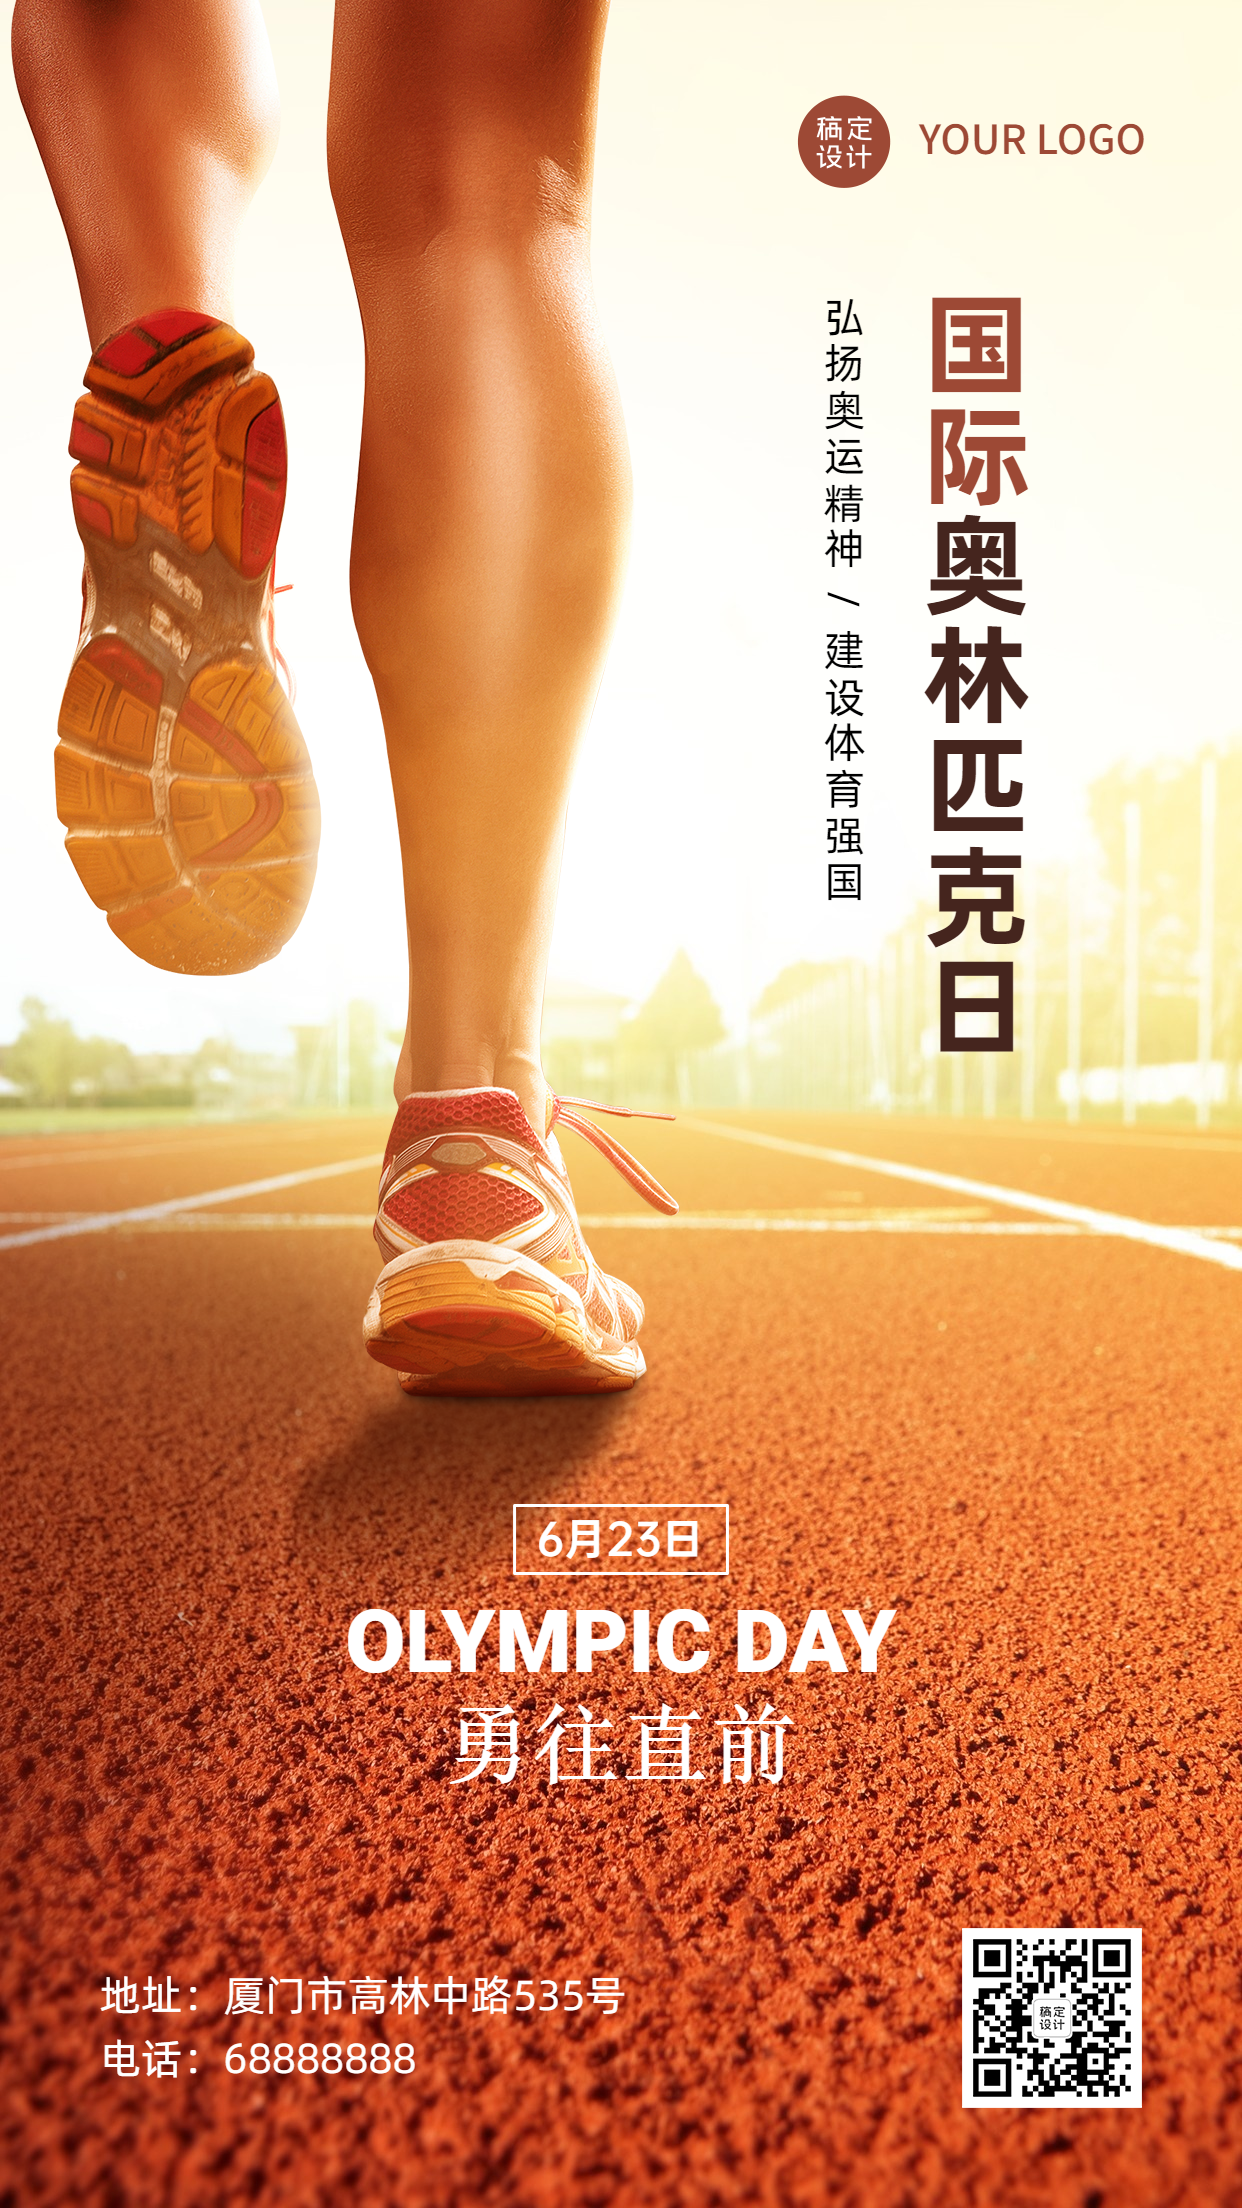 国际奥林匹克运动体育比赛手机海报